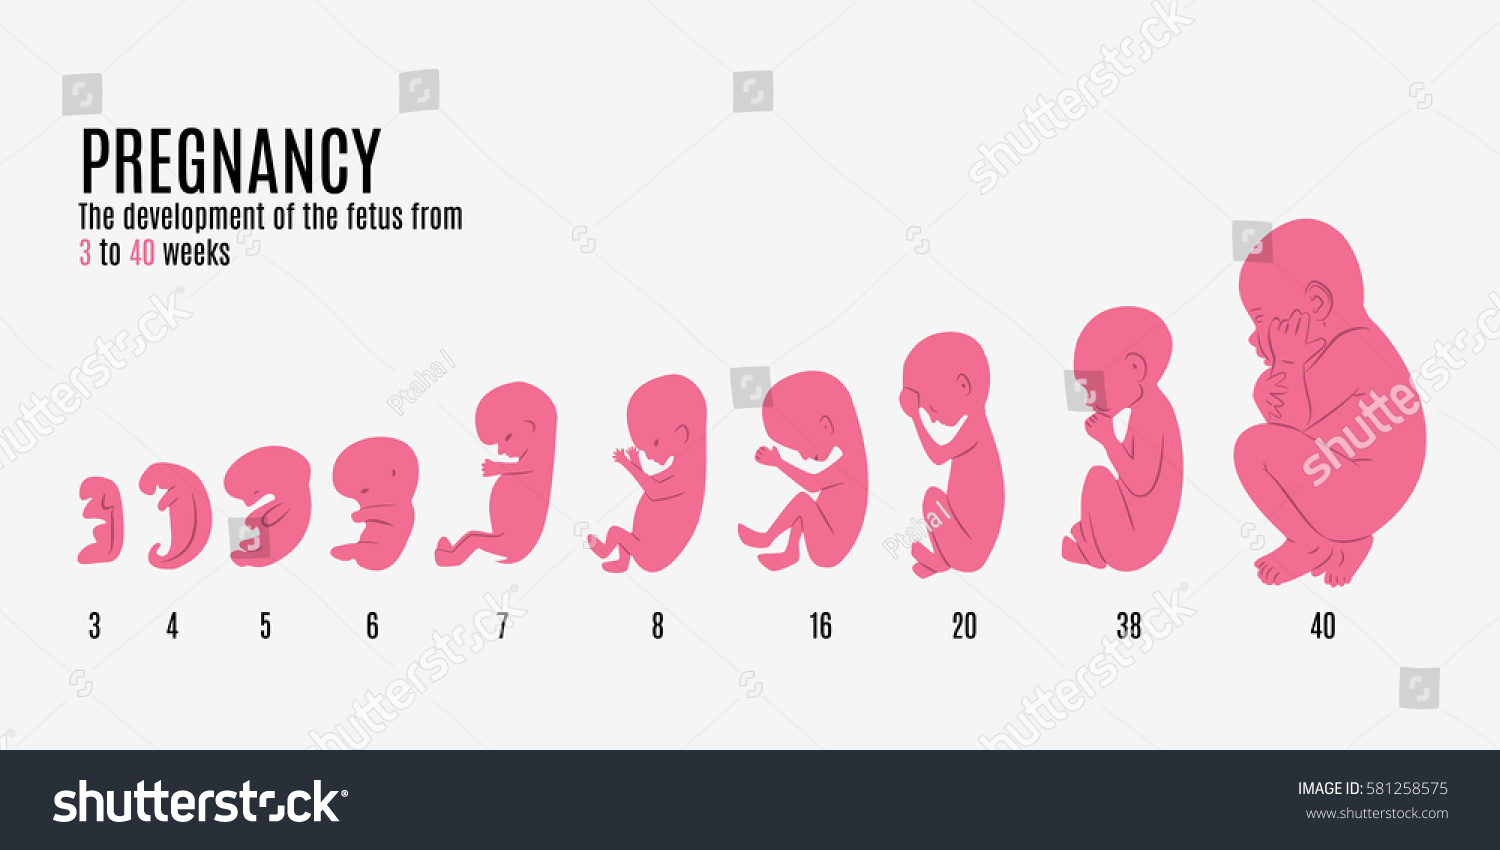 грудь и живот на первом месяце беременности фото 100